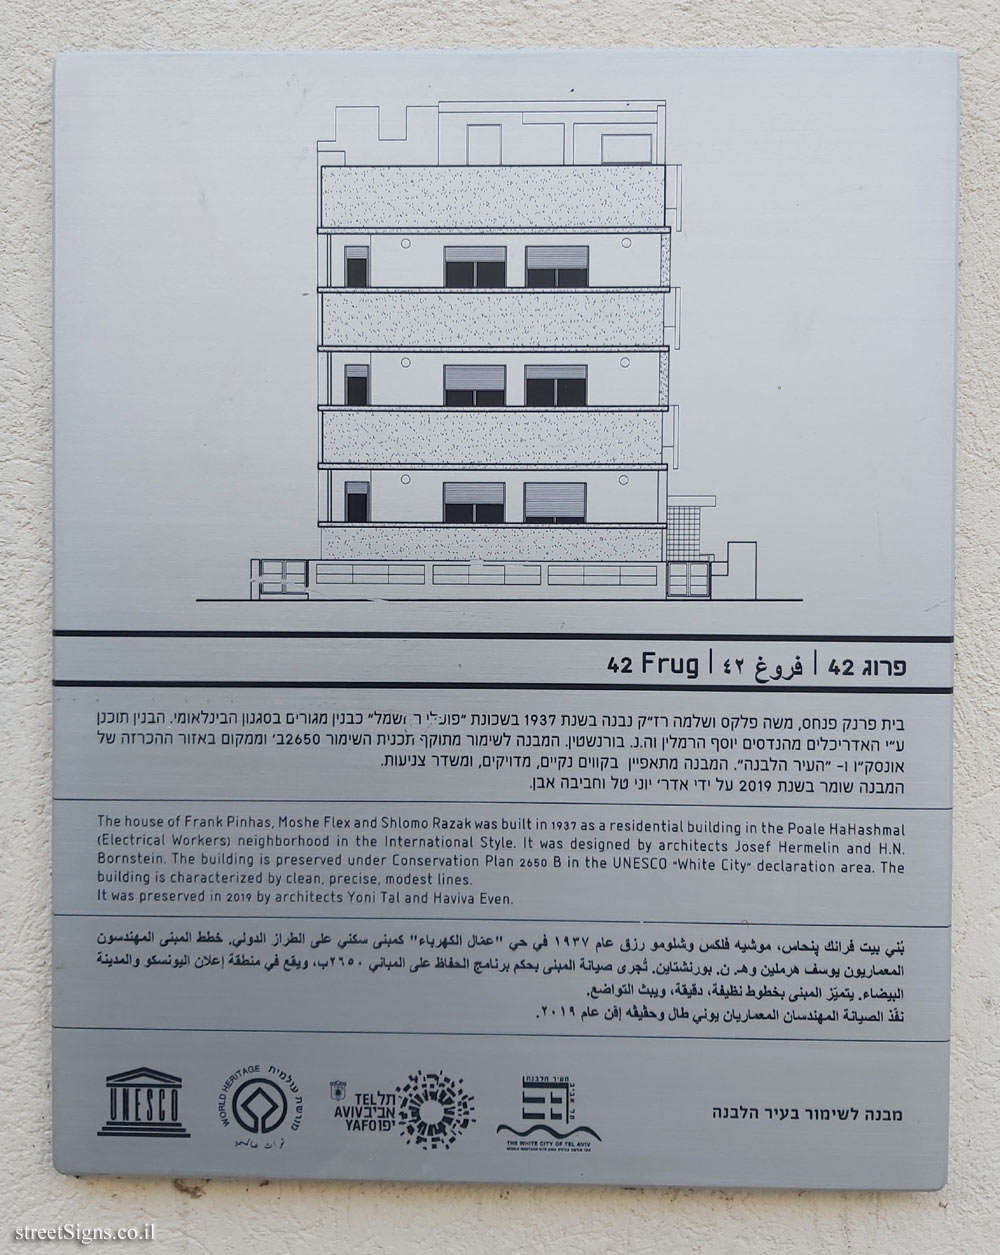 Tel Aviv - buildings for conservation - 42 Frug